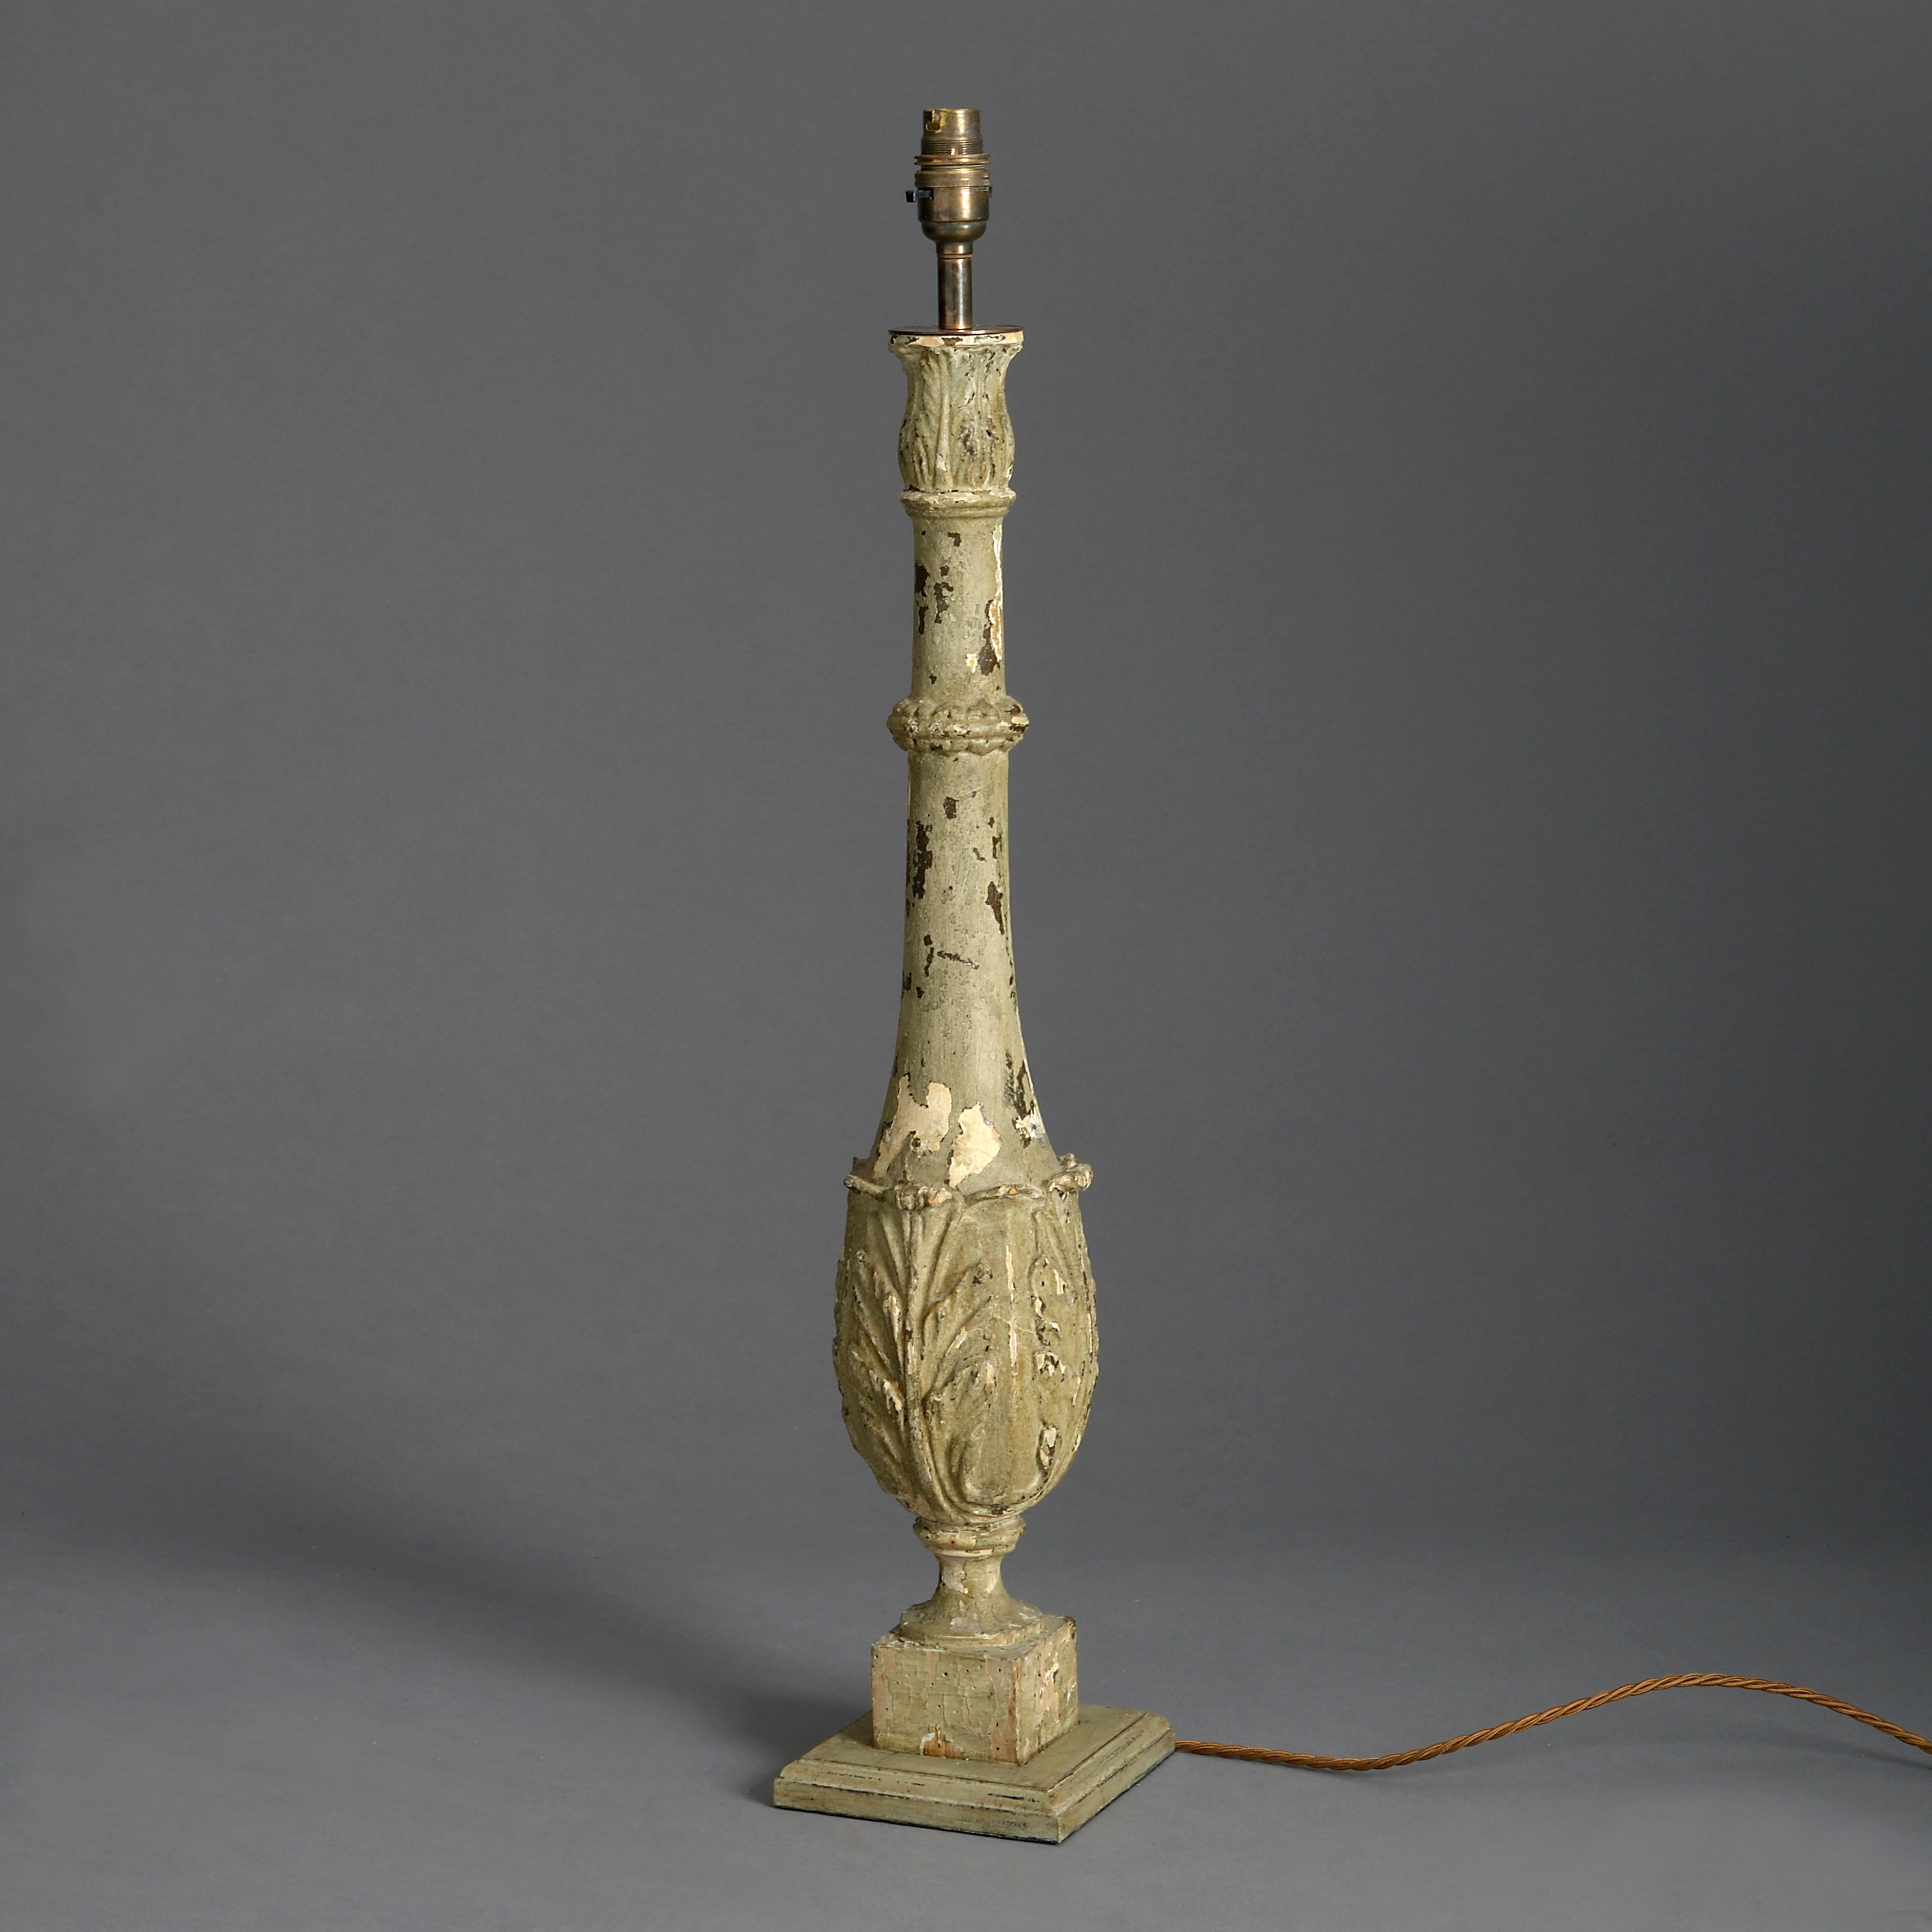 Ein Paar geschnitzte und bemalte Balustraden aus dem späten 19. Jahrhundert, deren Stiele mit Akanthusschnitzereien versehen sind und auf Sockeln ruhen.

Jetzt als Tischlampen verkabelt.

Schirme können separat erworben werden